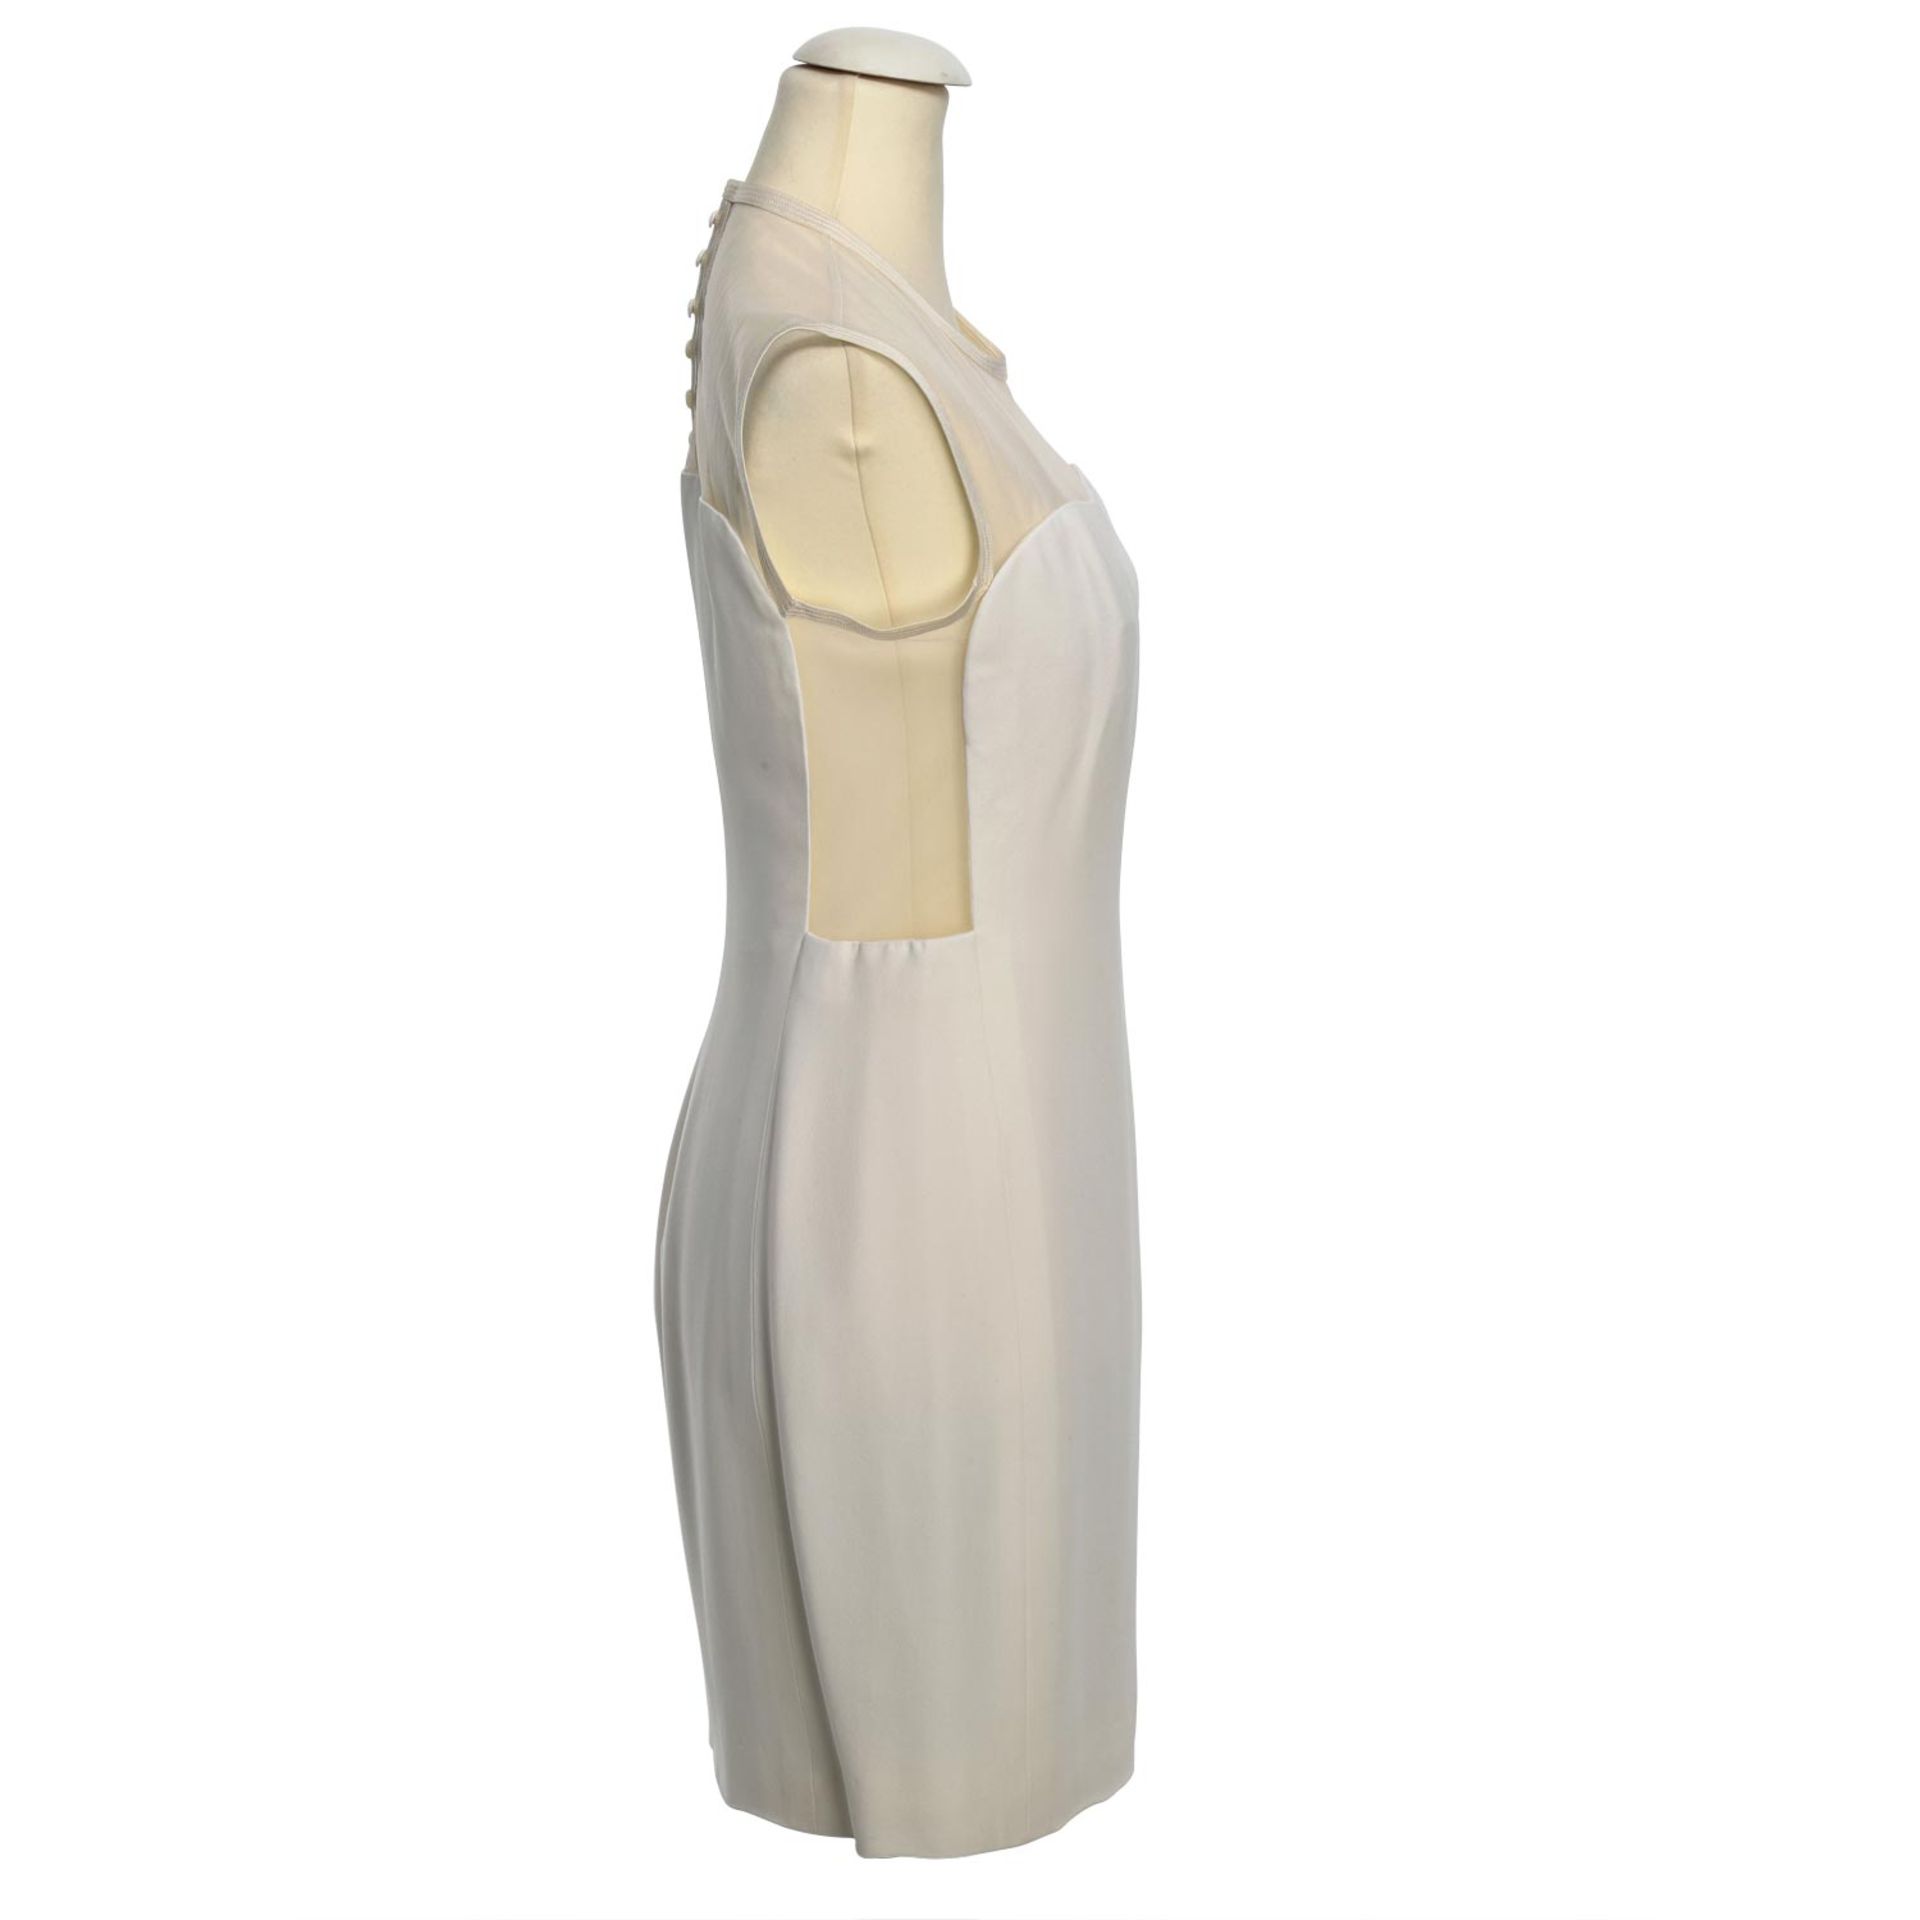 GIANNI VERSACE VINTAGE Kleid, Gr. 36/38.Weißes Etuikleid mit transparetem Mesh-Detail - Bild 3 aus 4